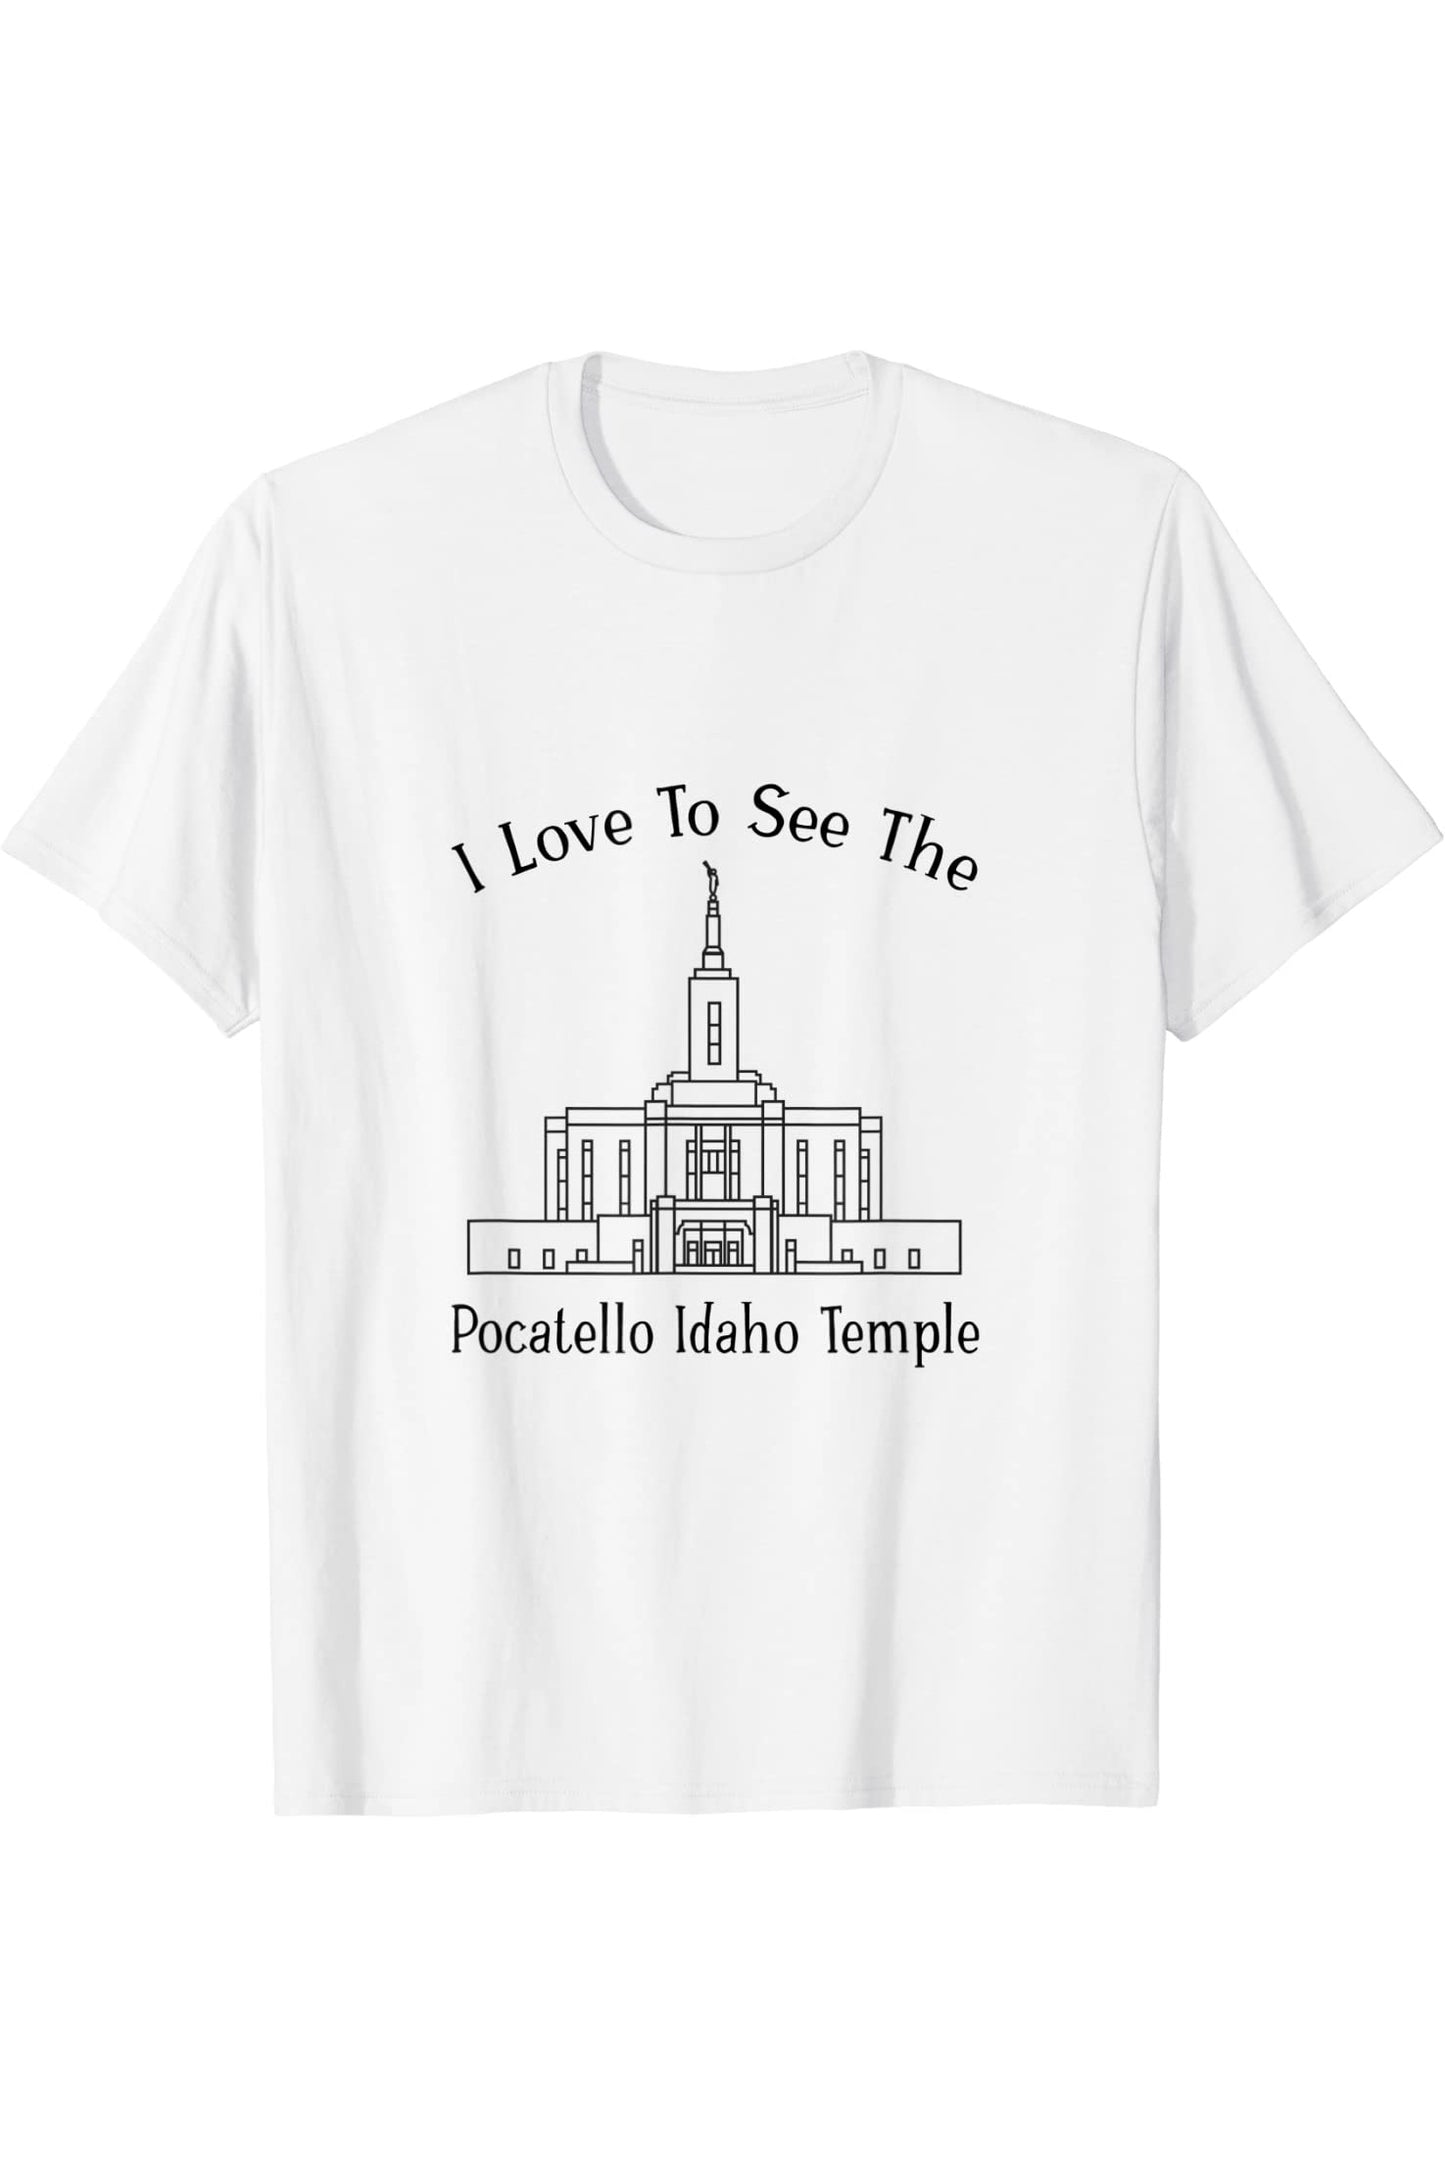 Templo de identificación de Pocatello, me encanta ver mi templo, feliz T-Shirt